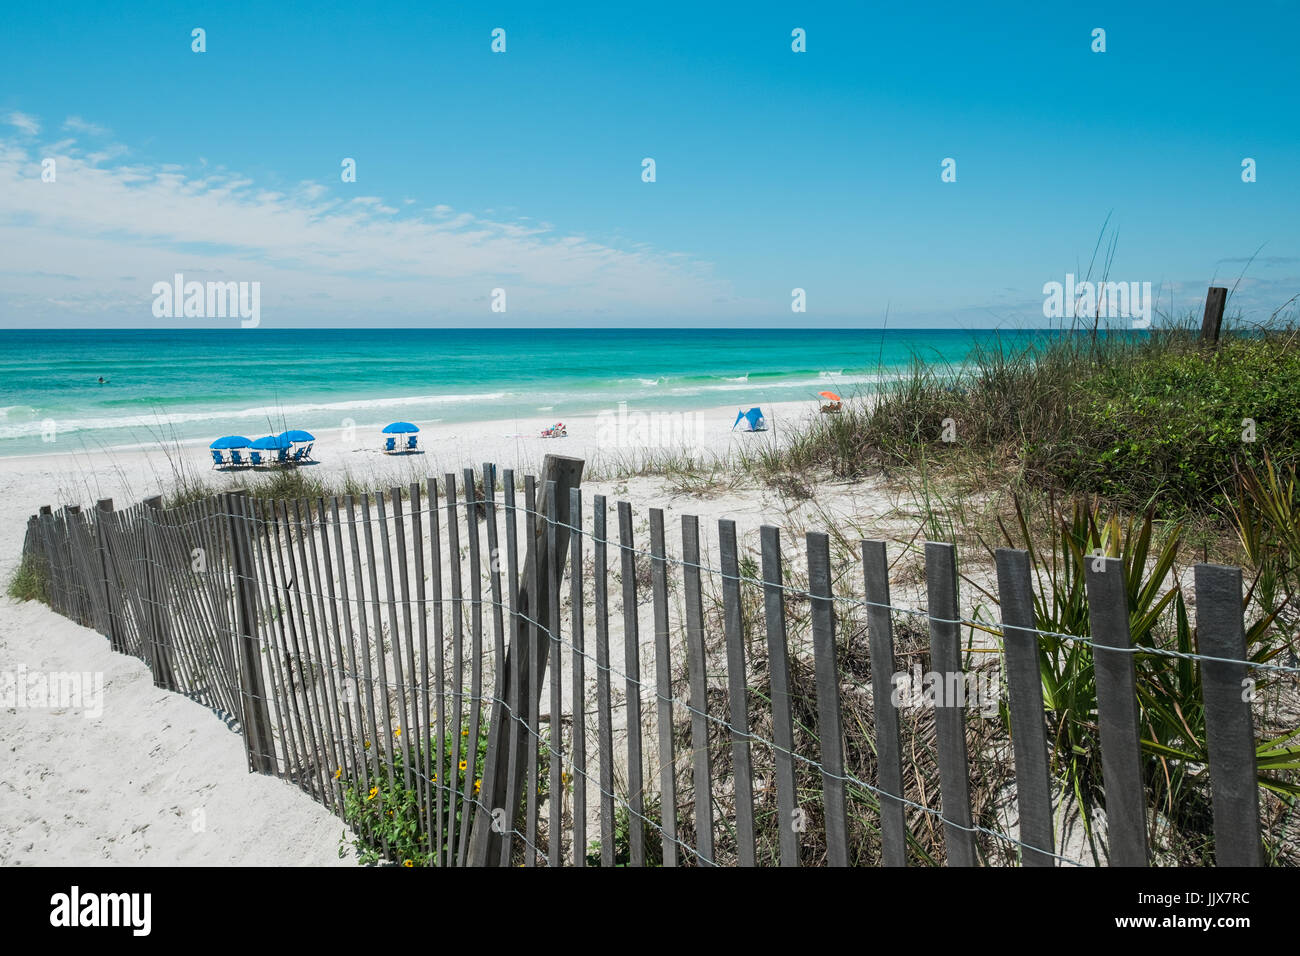 Y dunas de arena blanca protegida por el mar avena saludar a las familias en una popular playa de Destin, el Paseo Marítimo, en la costa del golfo de Florida, Estados Unidos. Foto de stock